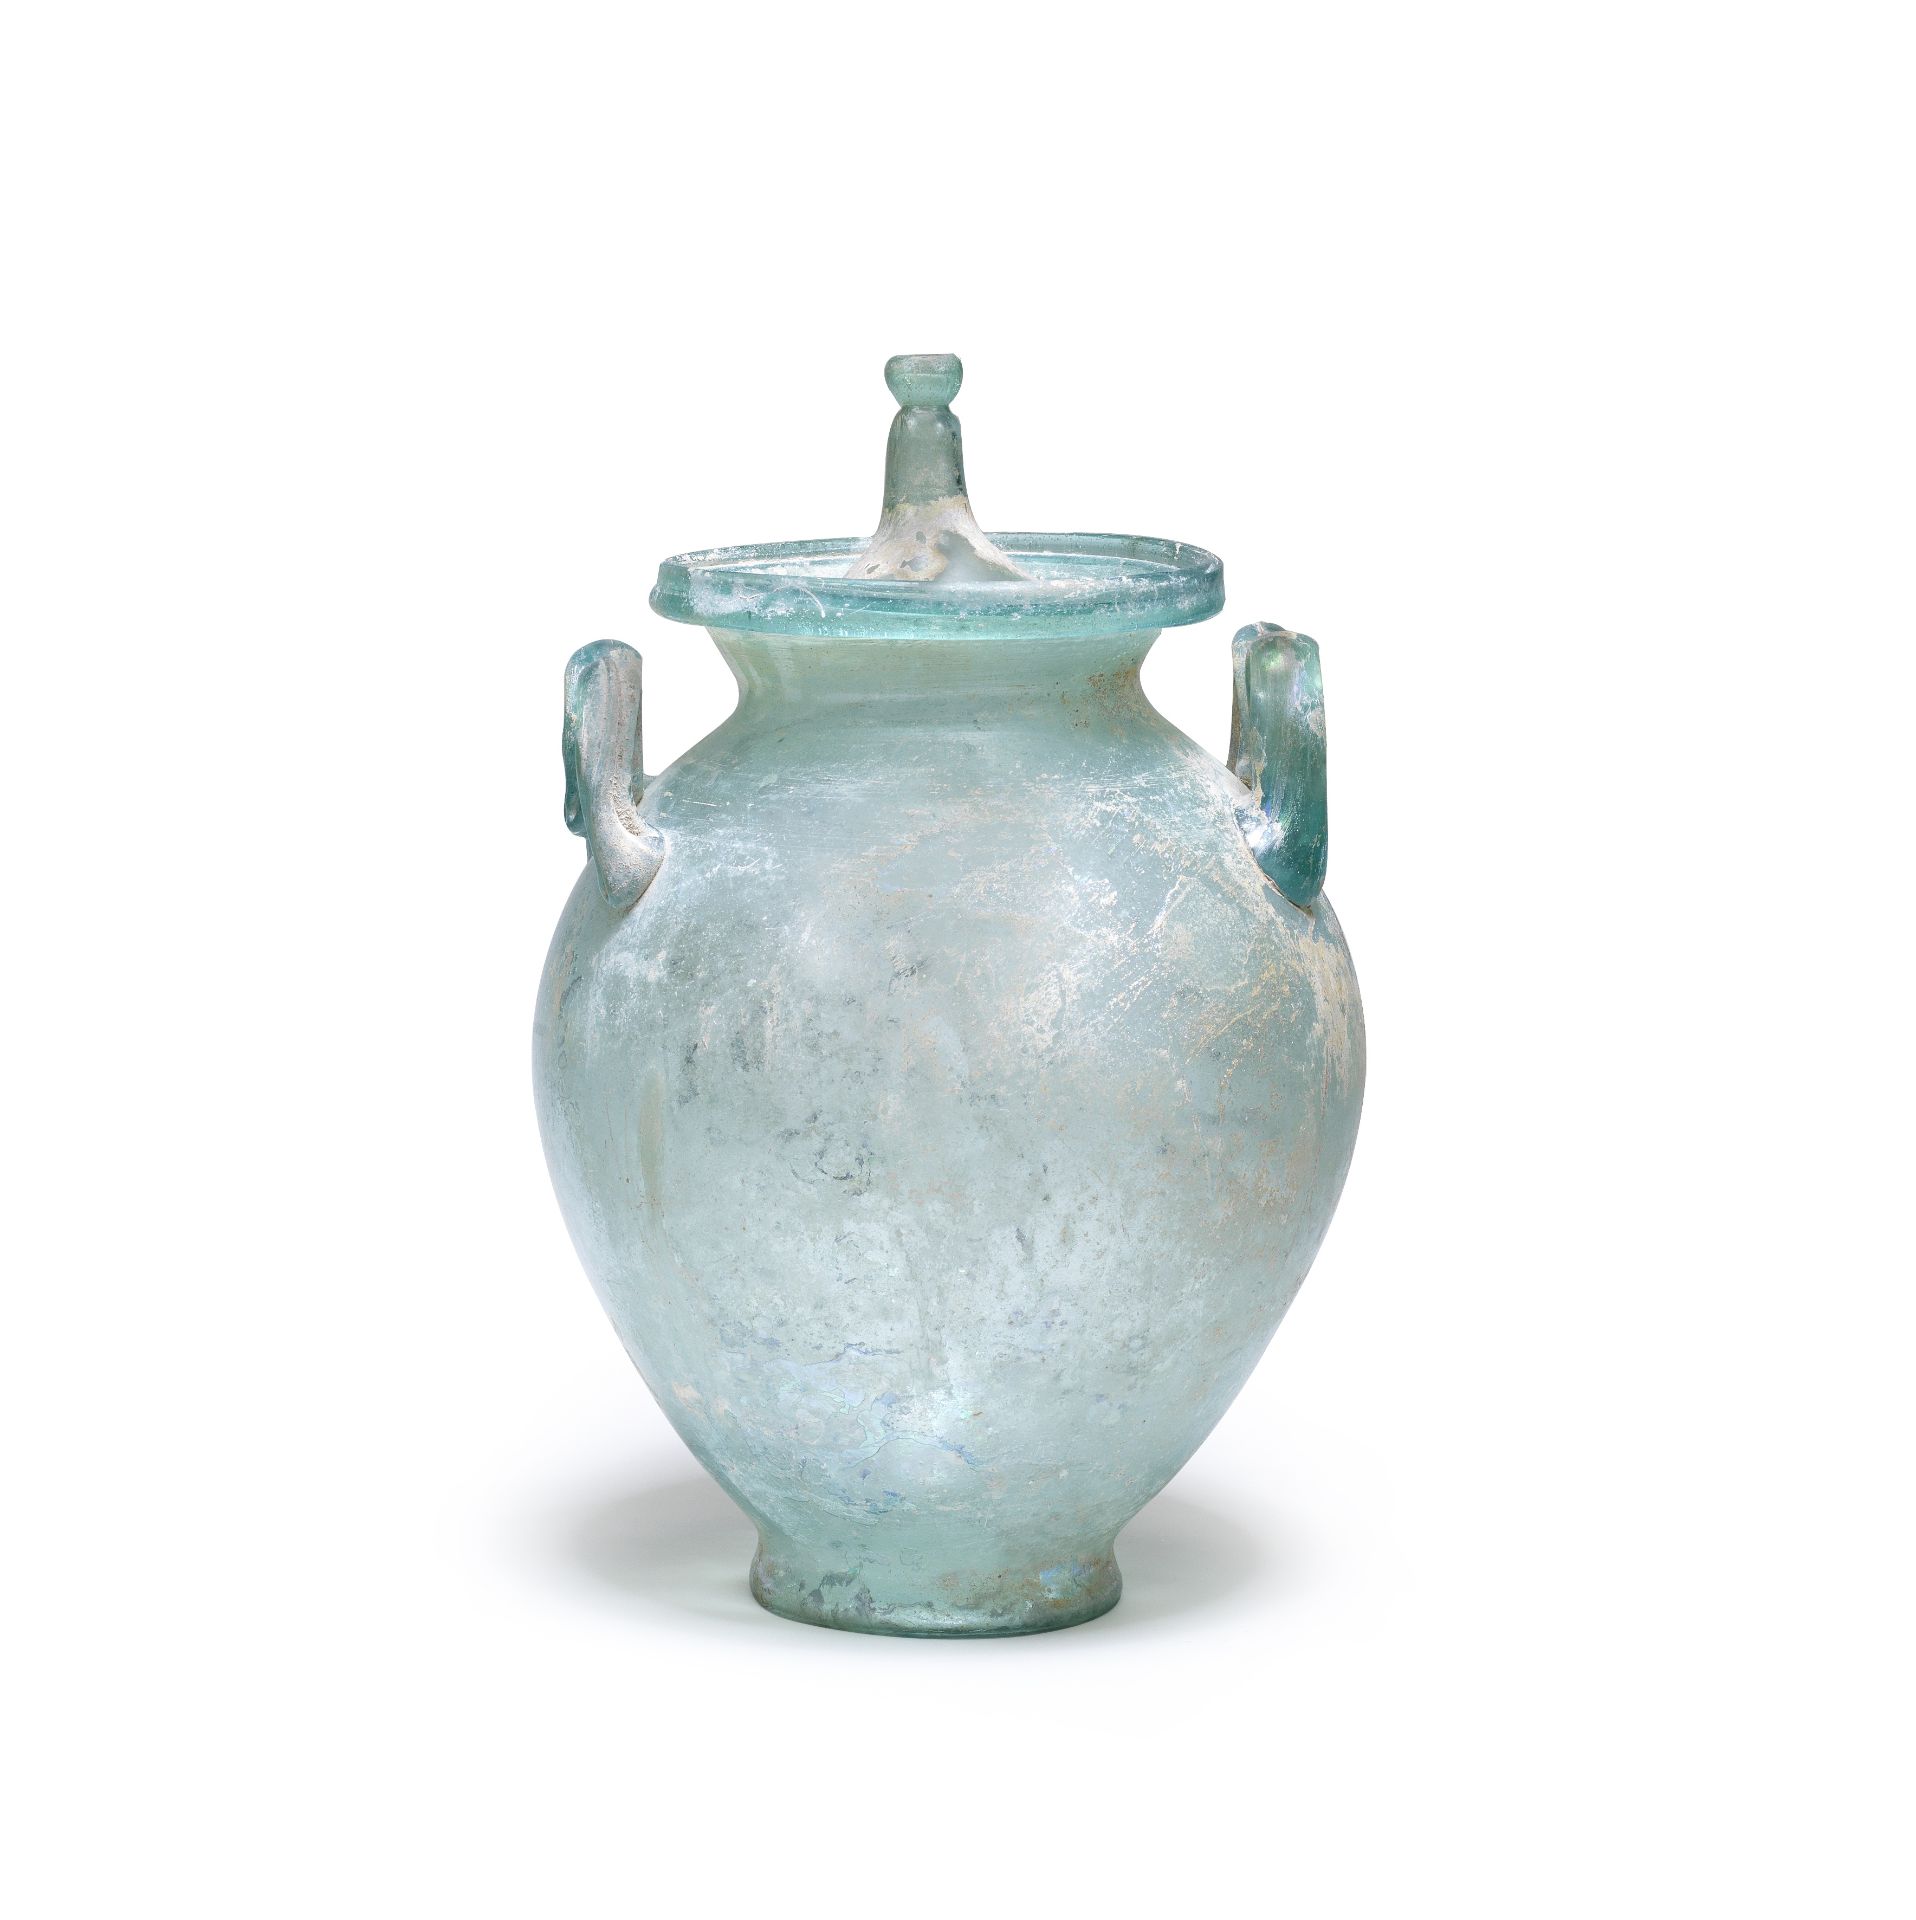 A Roman blue-green glass lidded cinerary urn